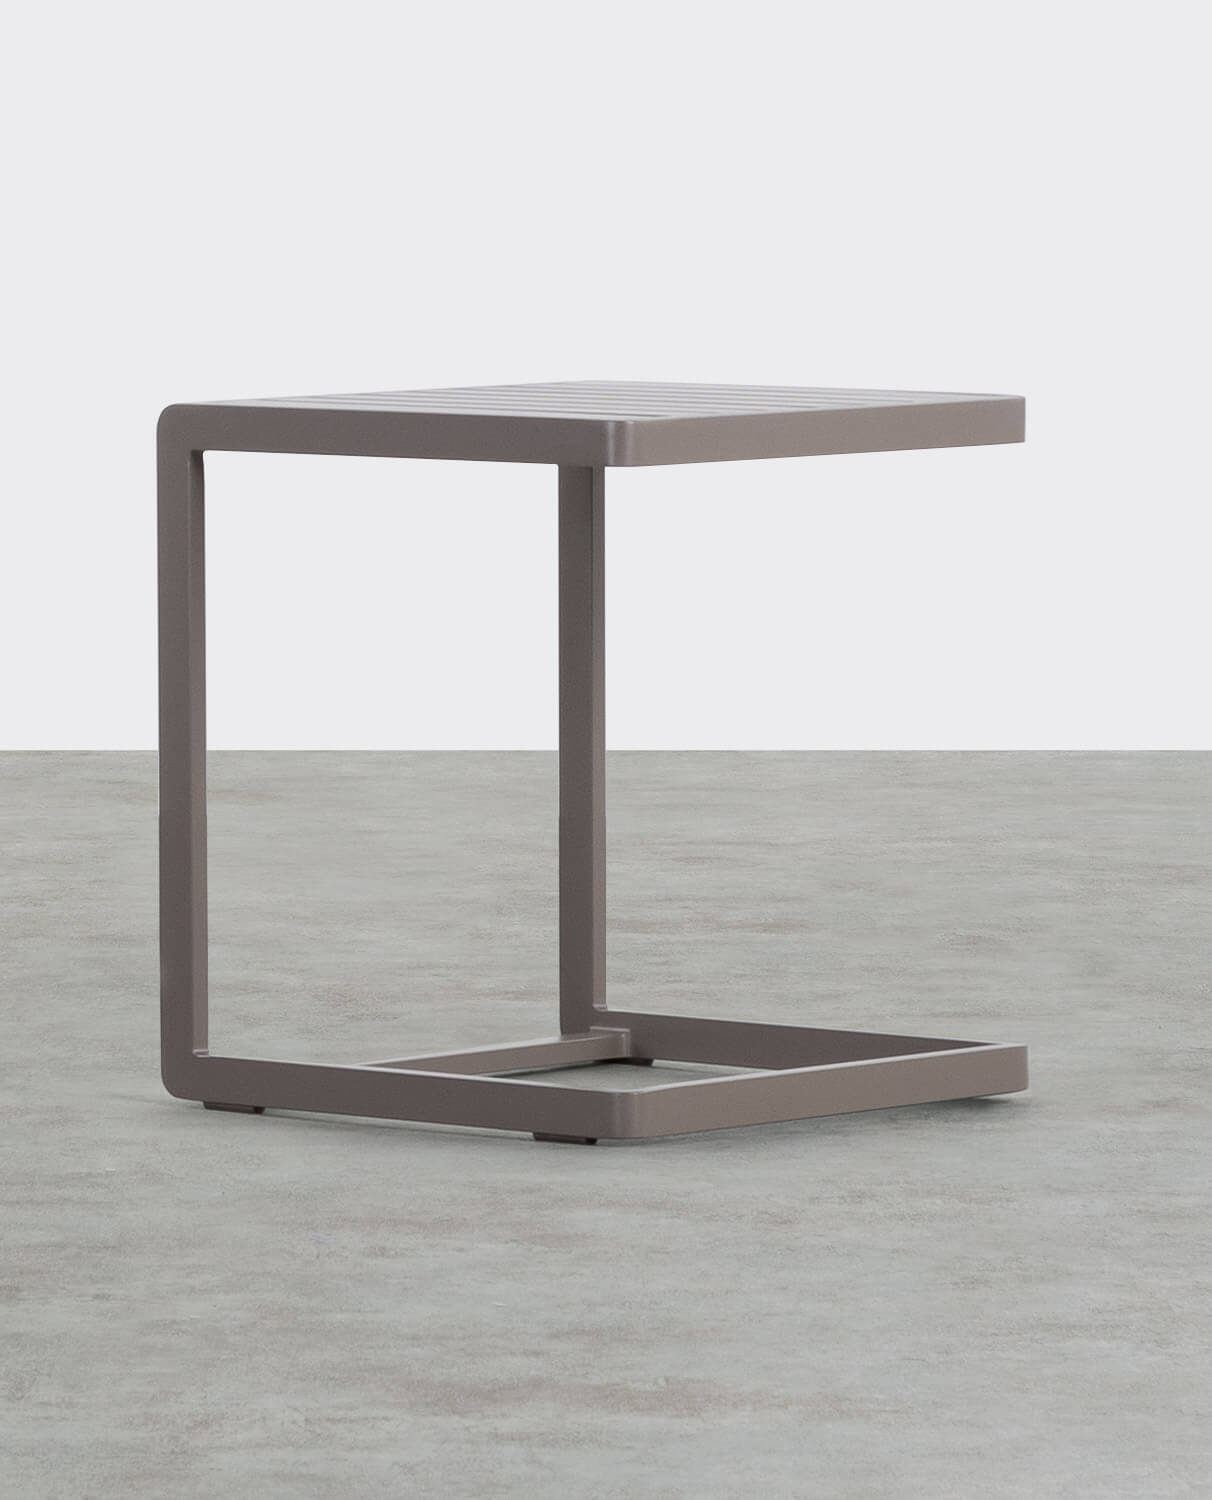 Tavolino Ausiliario in Alluminio (40x40 cm) Kreta, immagine della galleria 1